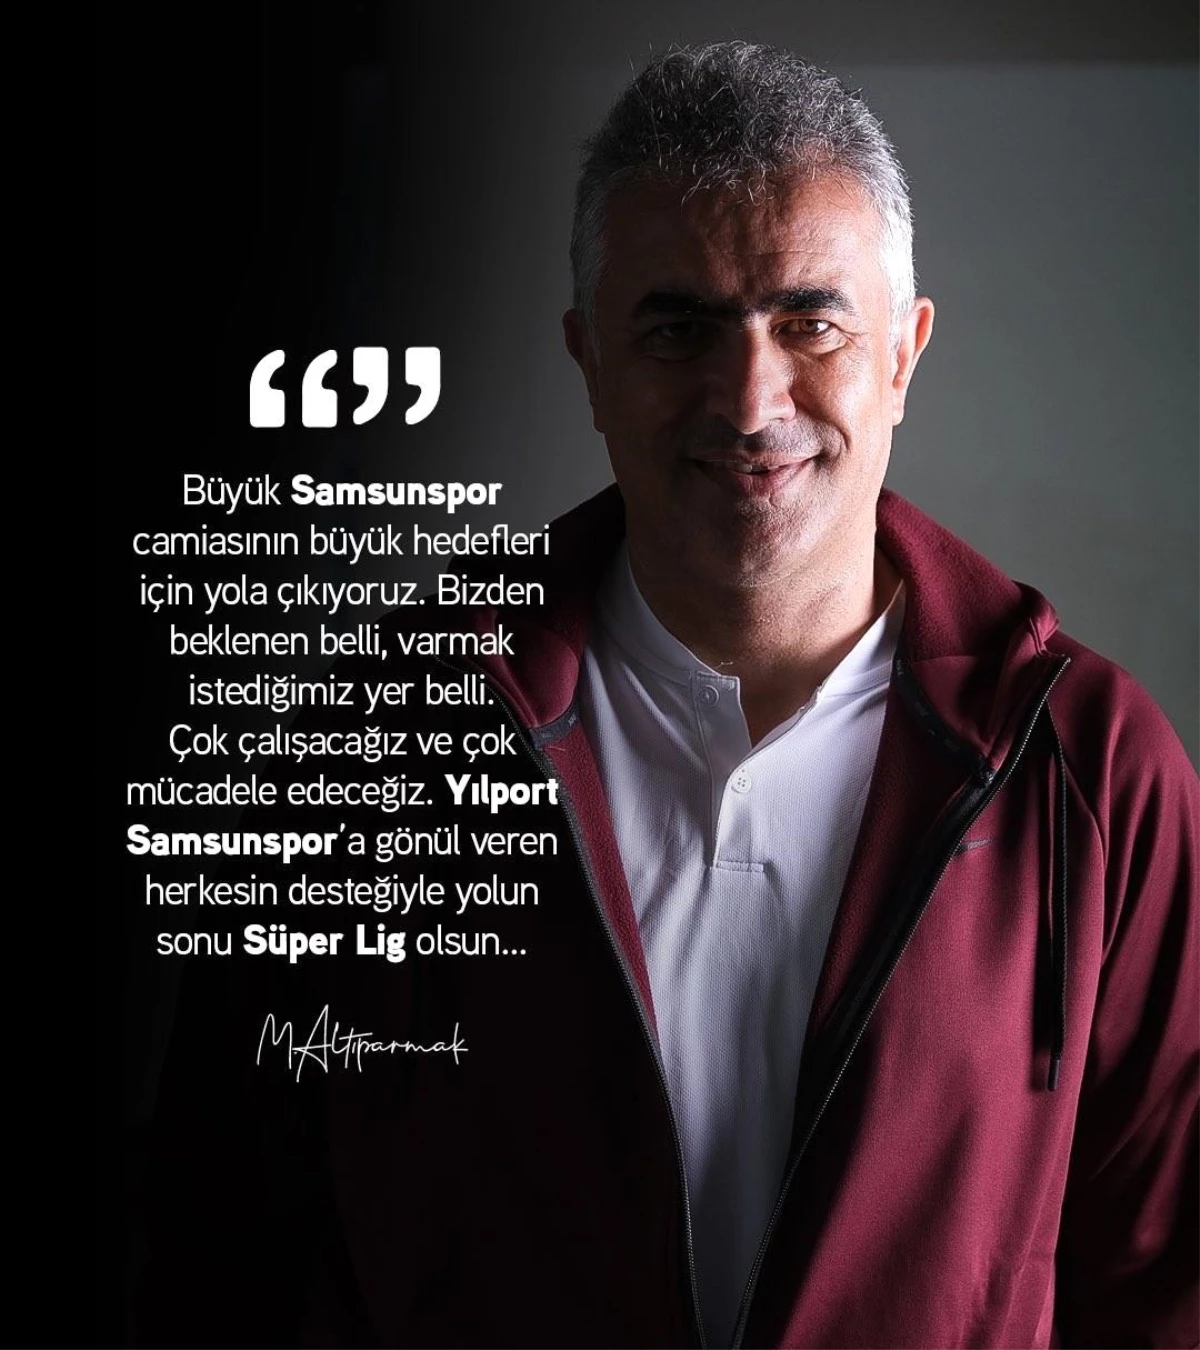 Mehmet Altıparmak: "Yolun sonu Süper Lig olsun"